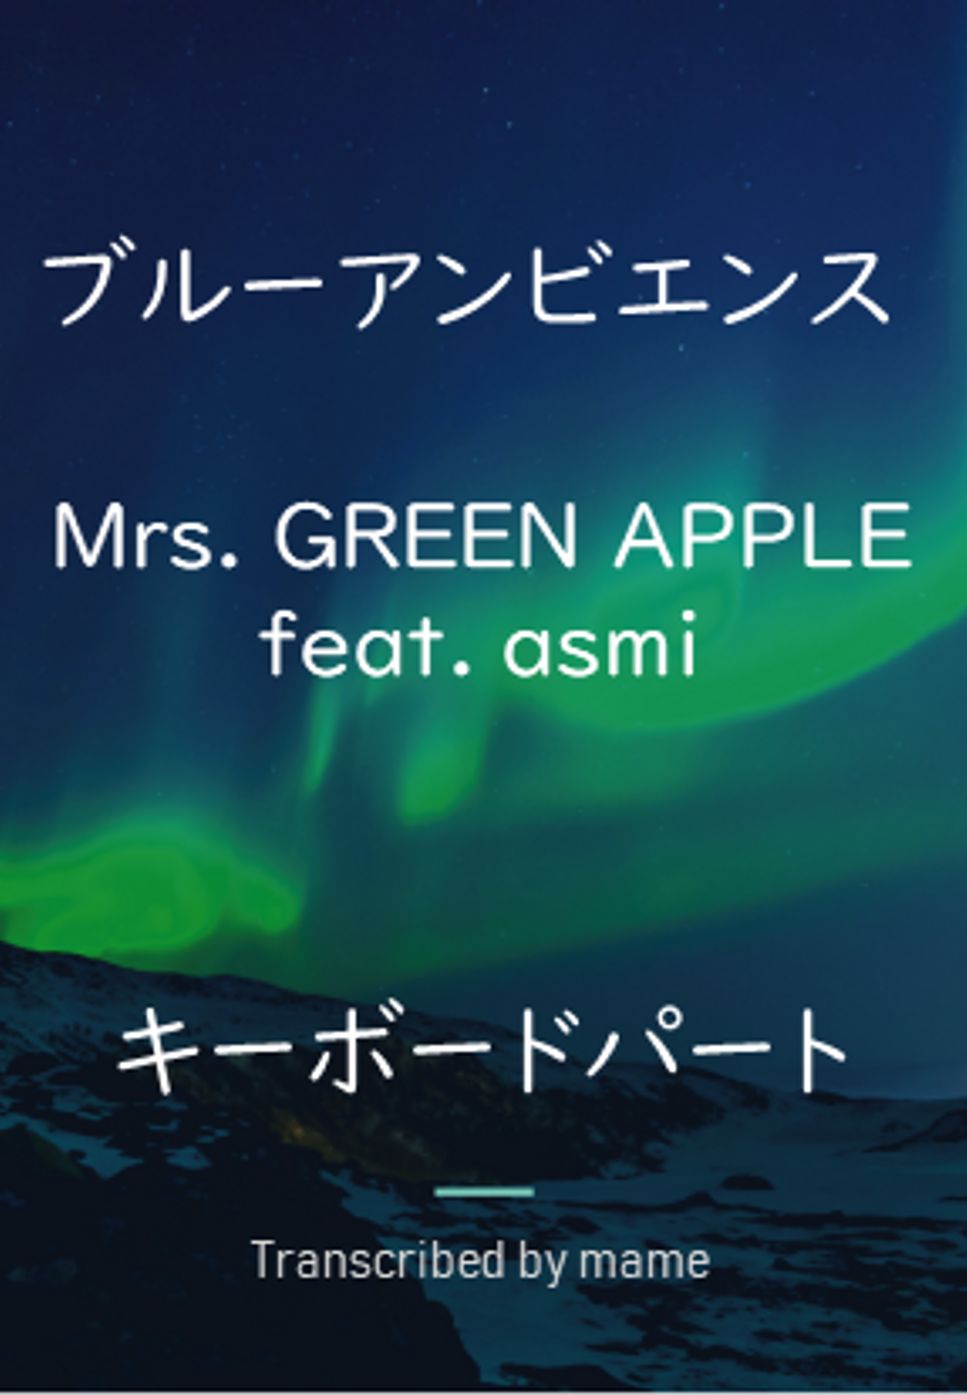 Mrs. GREEN APPLE - ブルーアンビエンス (ピアノパート) by mame